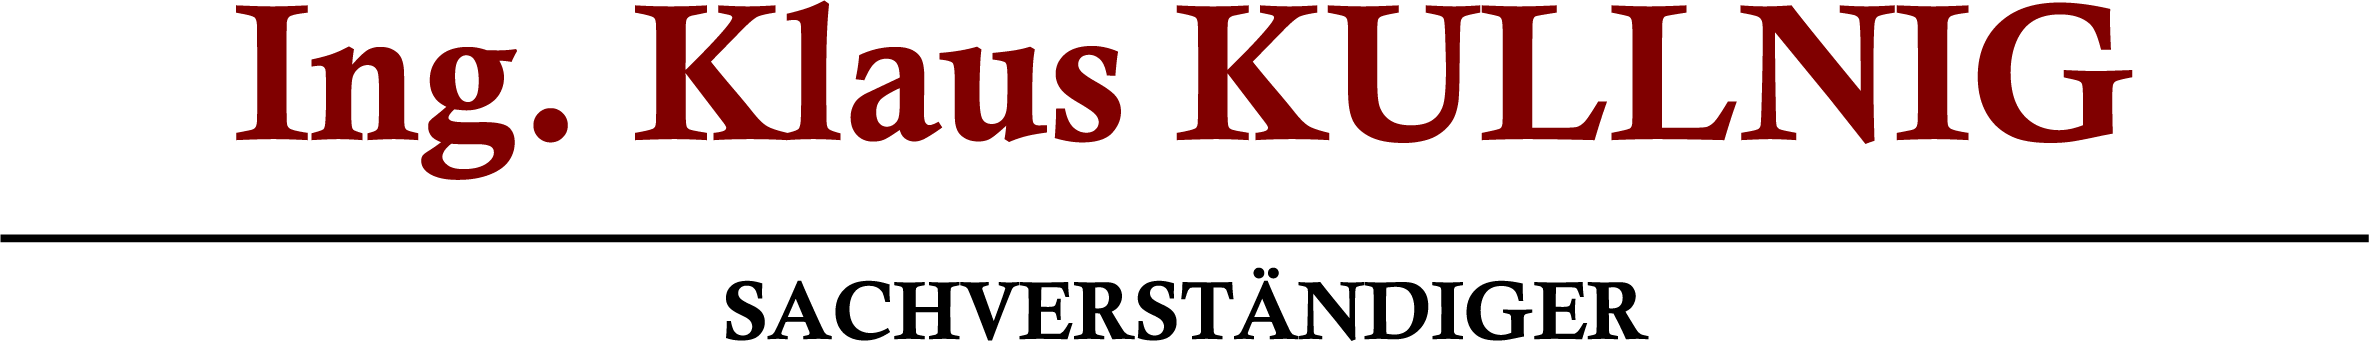 Logo Ing. Klaus KULLNIG, Sachverständige GmbH